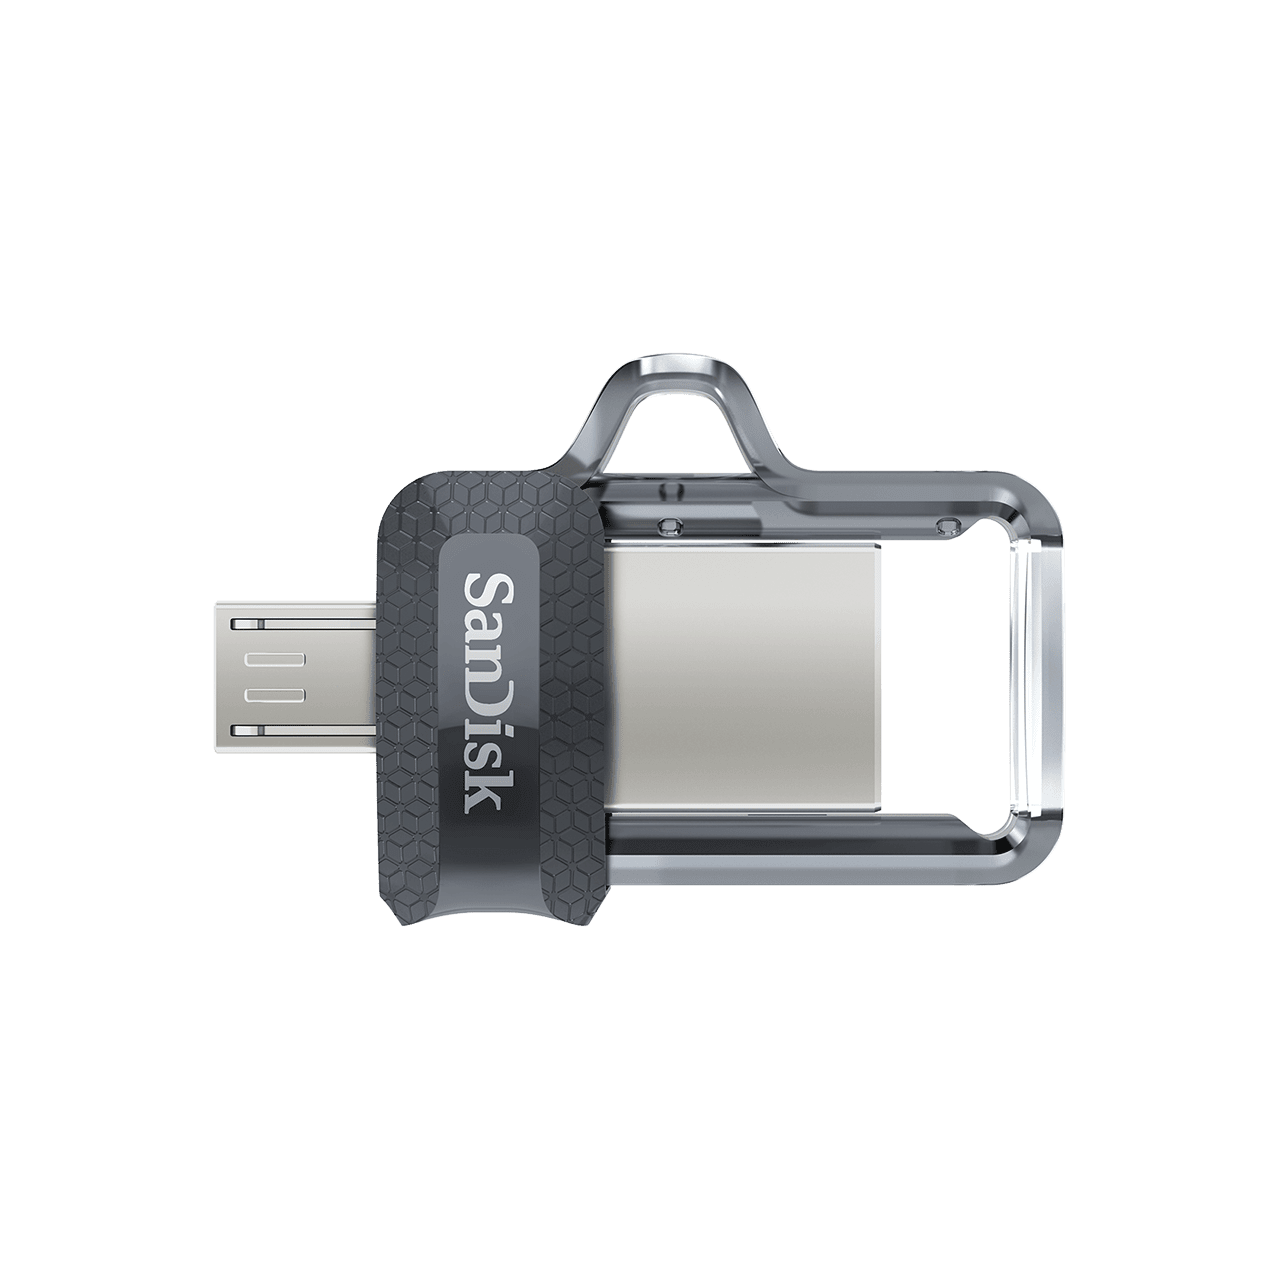 Bild von Ultra Dual Drive m.3 128 GB USB 3.0